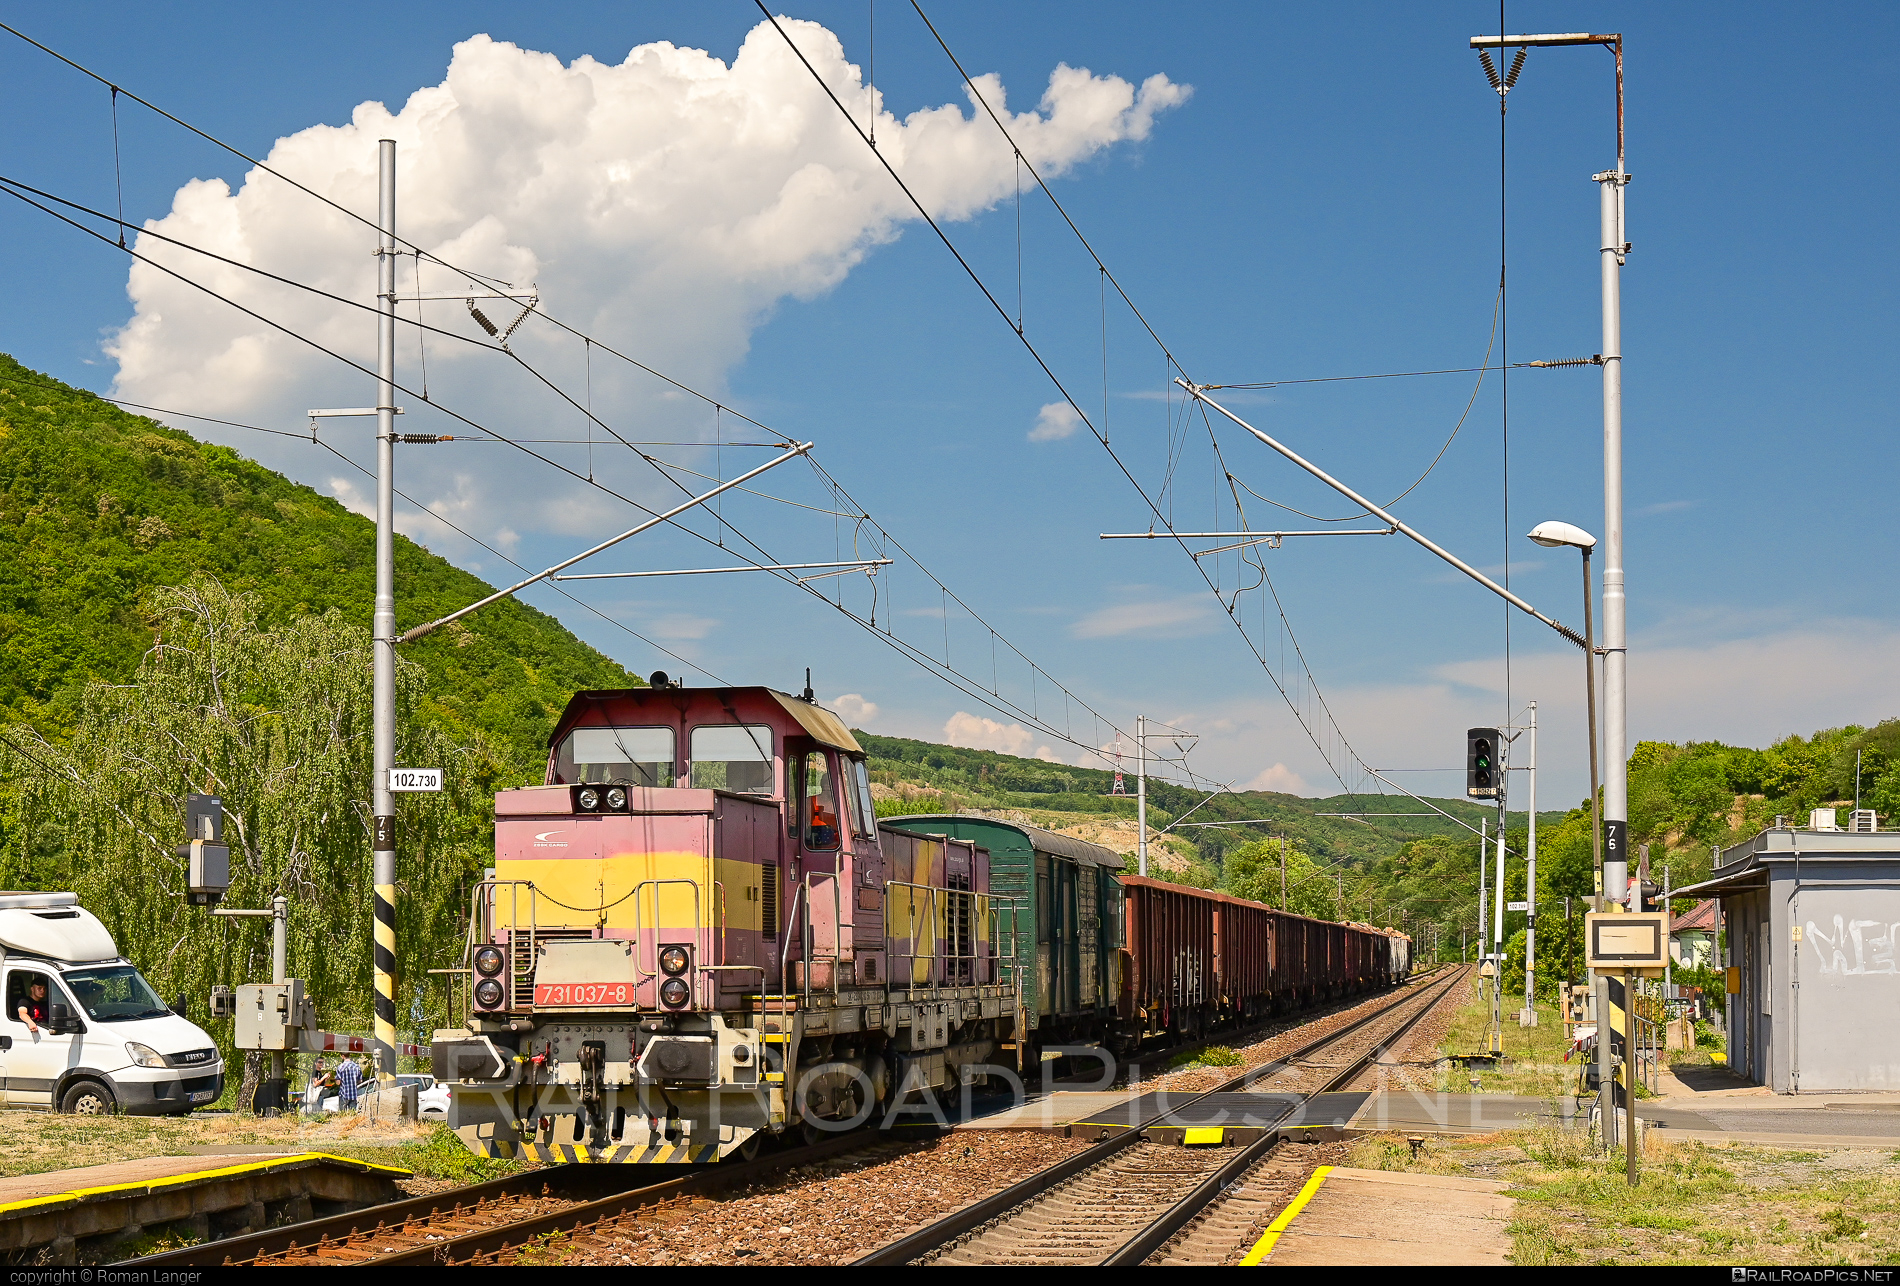 ČKD T 457.1 (731) - 731 037-8 operated by Železničná Spoločnost' Cargo Slovakia a.s. #ZeleznicnaSpolocnostCargoSlovakia #ckd #ckd4571 #ckd731 #ckdt4571 #openwagon #zsskcargo